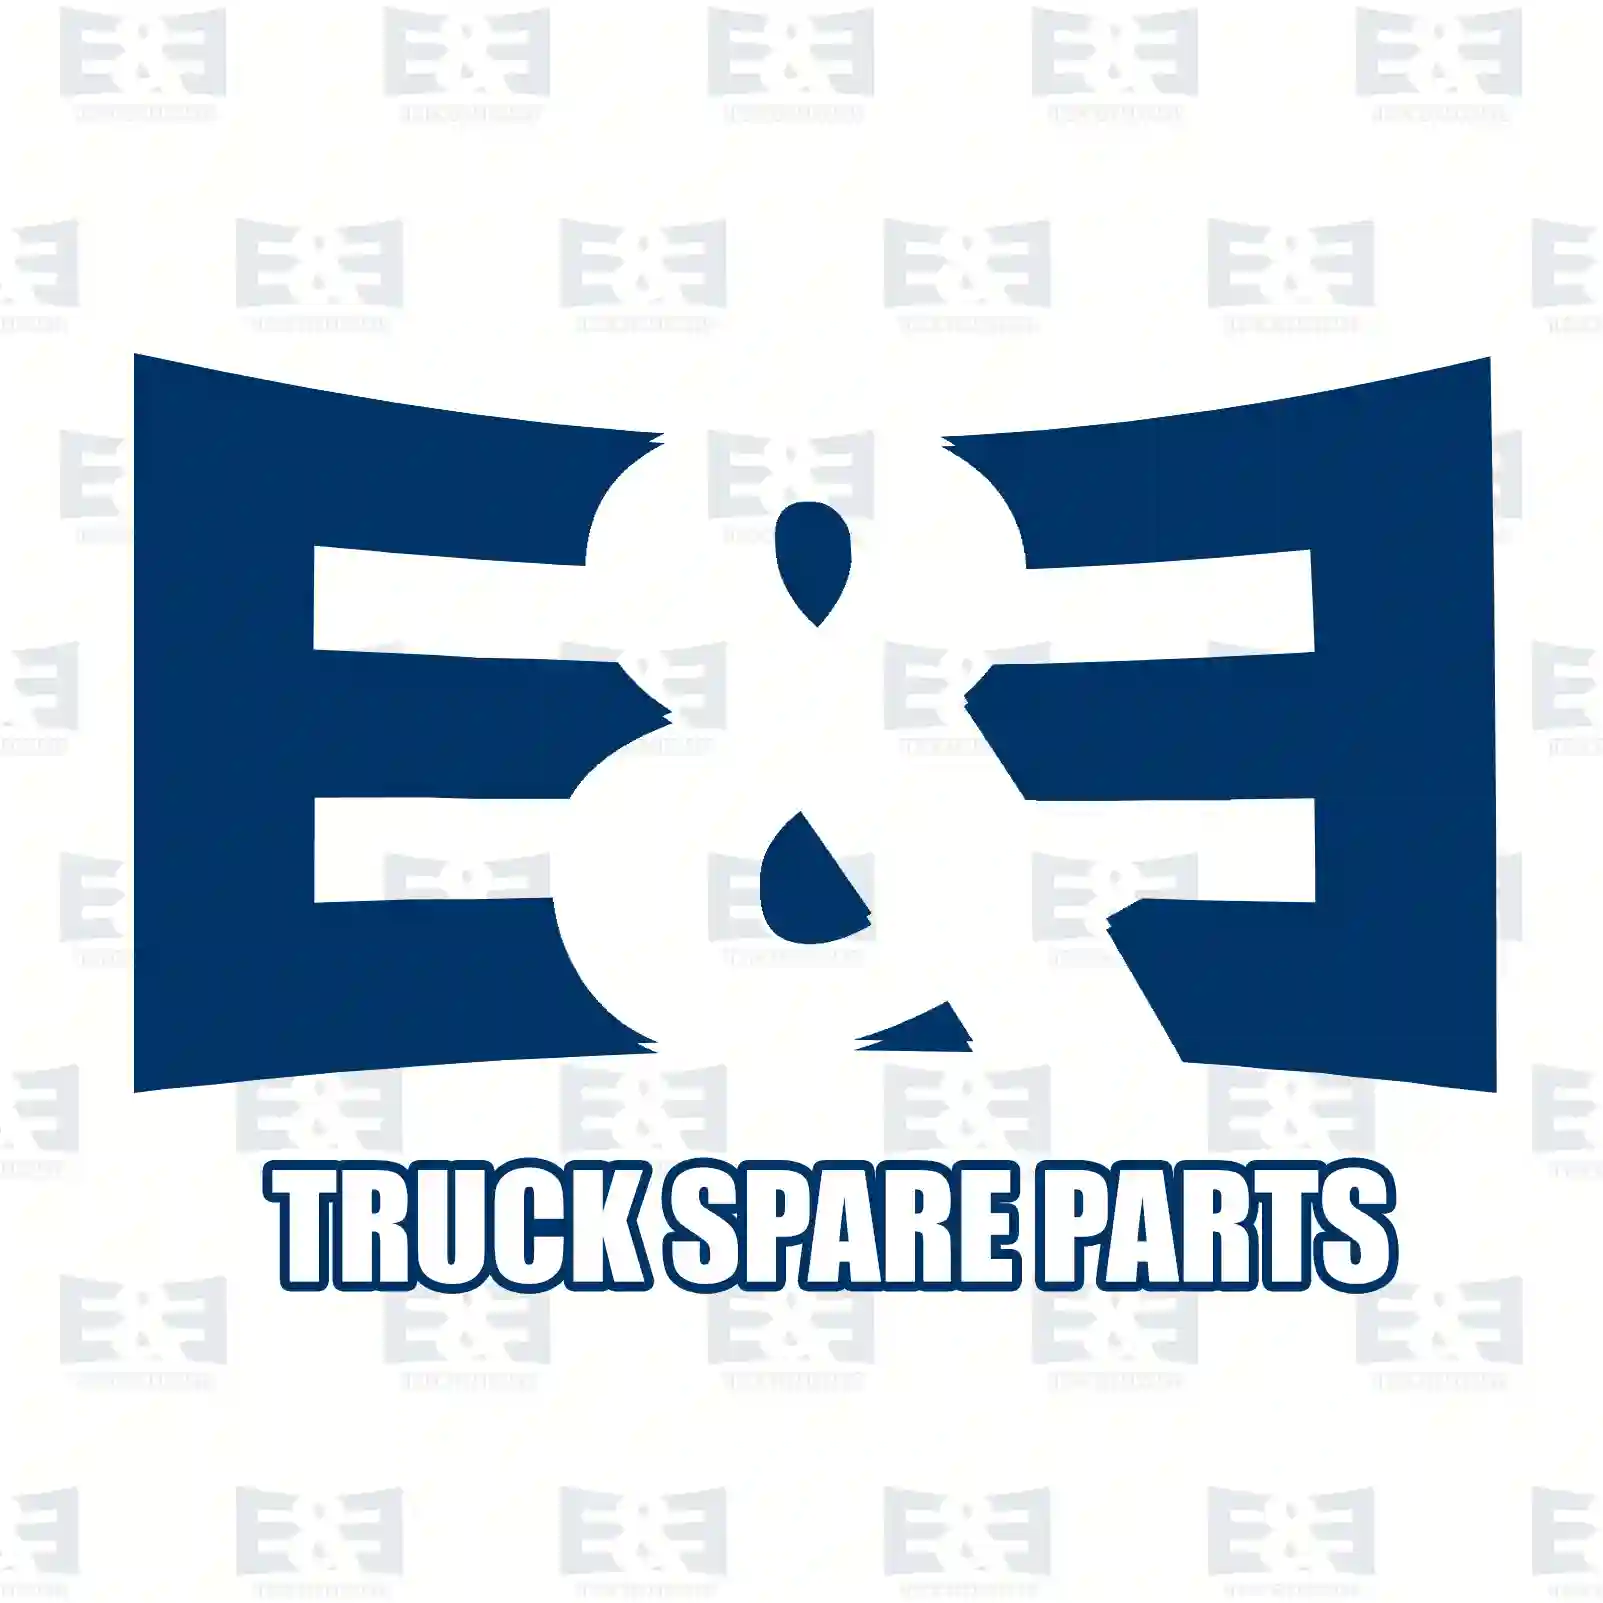 Hazard warning switch, 2E2297984, 504097210, ZG20025-0008 ||  2E2297984 E&E Truck Spare Parts | Truck Spare Parts, Auotomotive Spare Parts Hazard warning switch, 2E2297984, 504097210, ZG20025-0008 ||  2E2297984 E&E Truck Spare Parts | Truck Spare Parts, Auotomotive Spare Parts